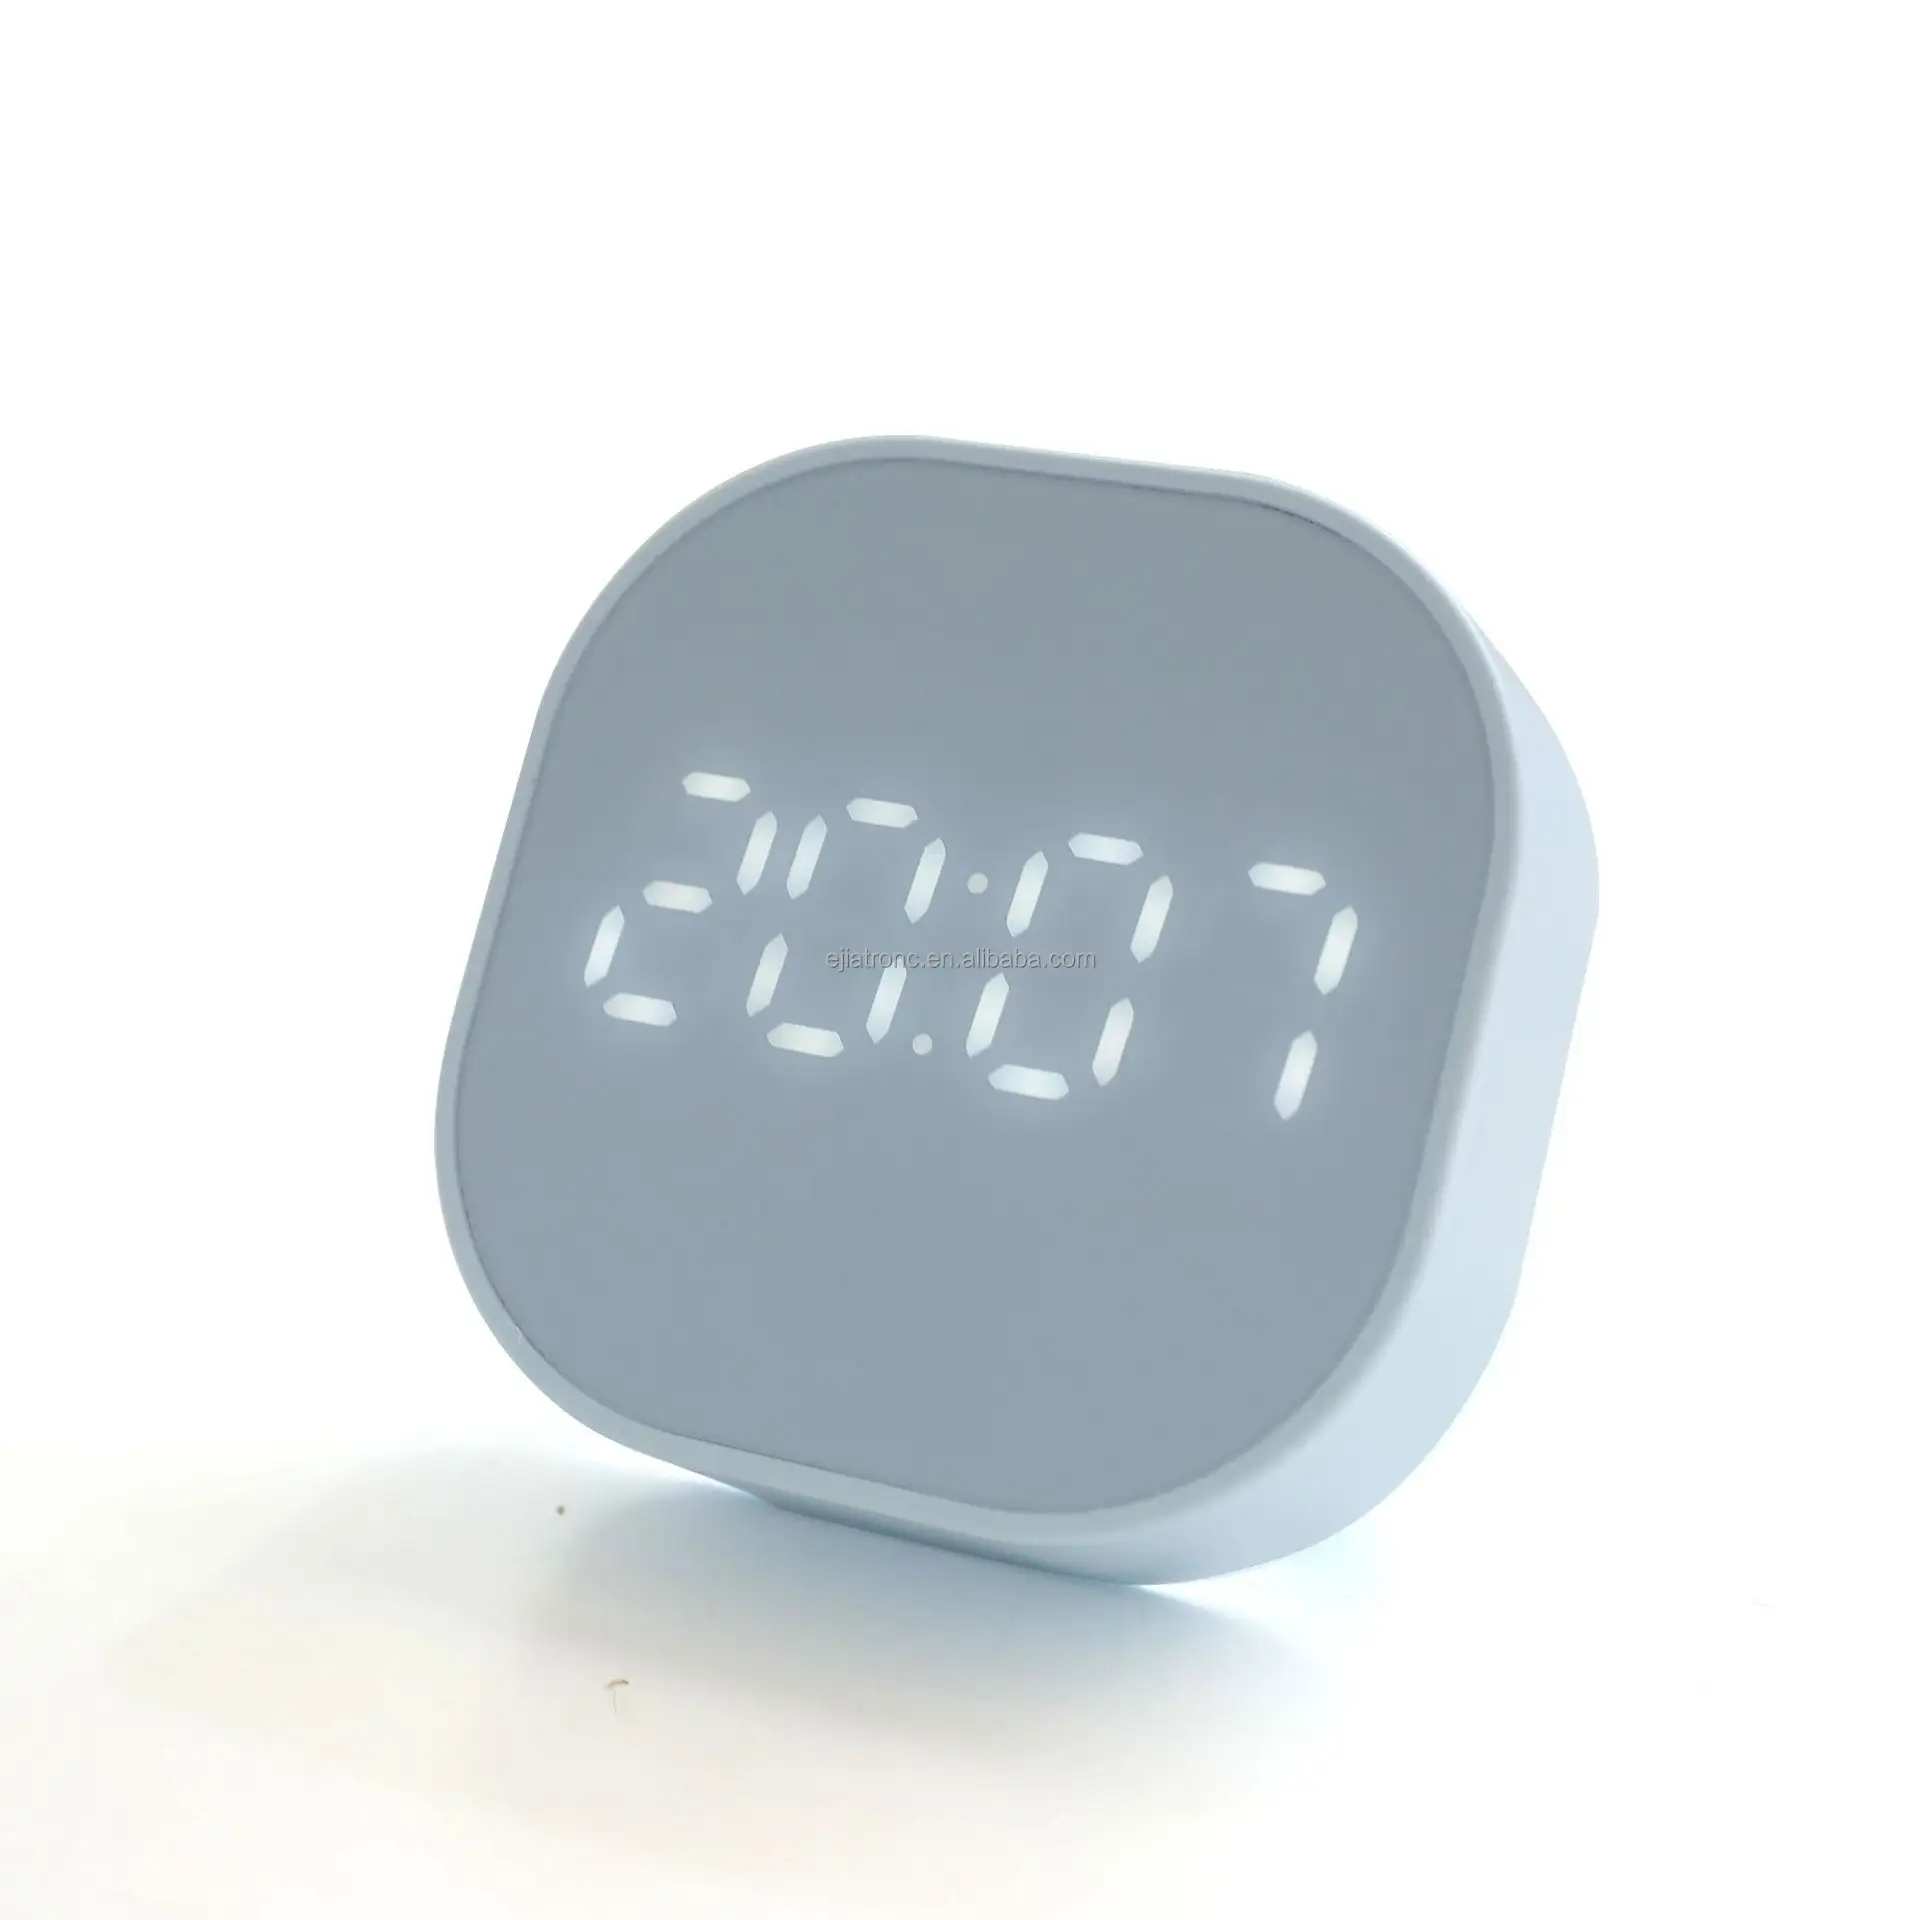 Digital Alarm Clock Magnetic Smart Sensor Alarm Clock with LED Time Display, 2 Alarm Settings, Temperature Countdown Timer